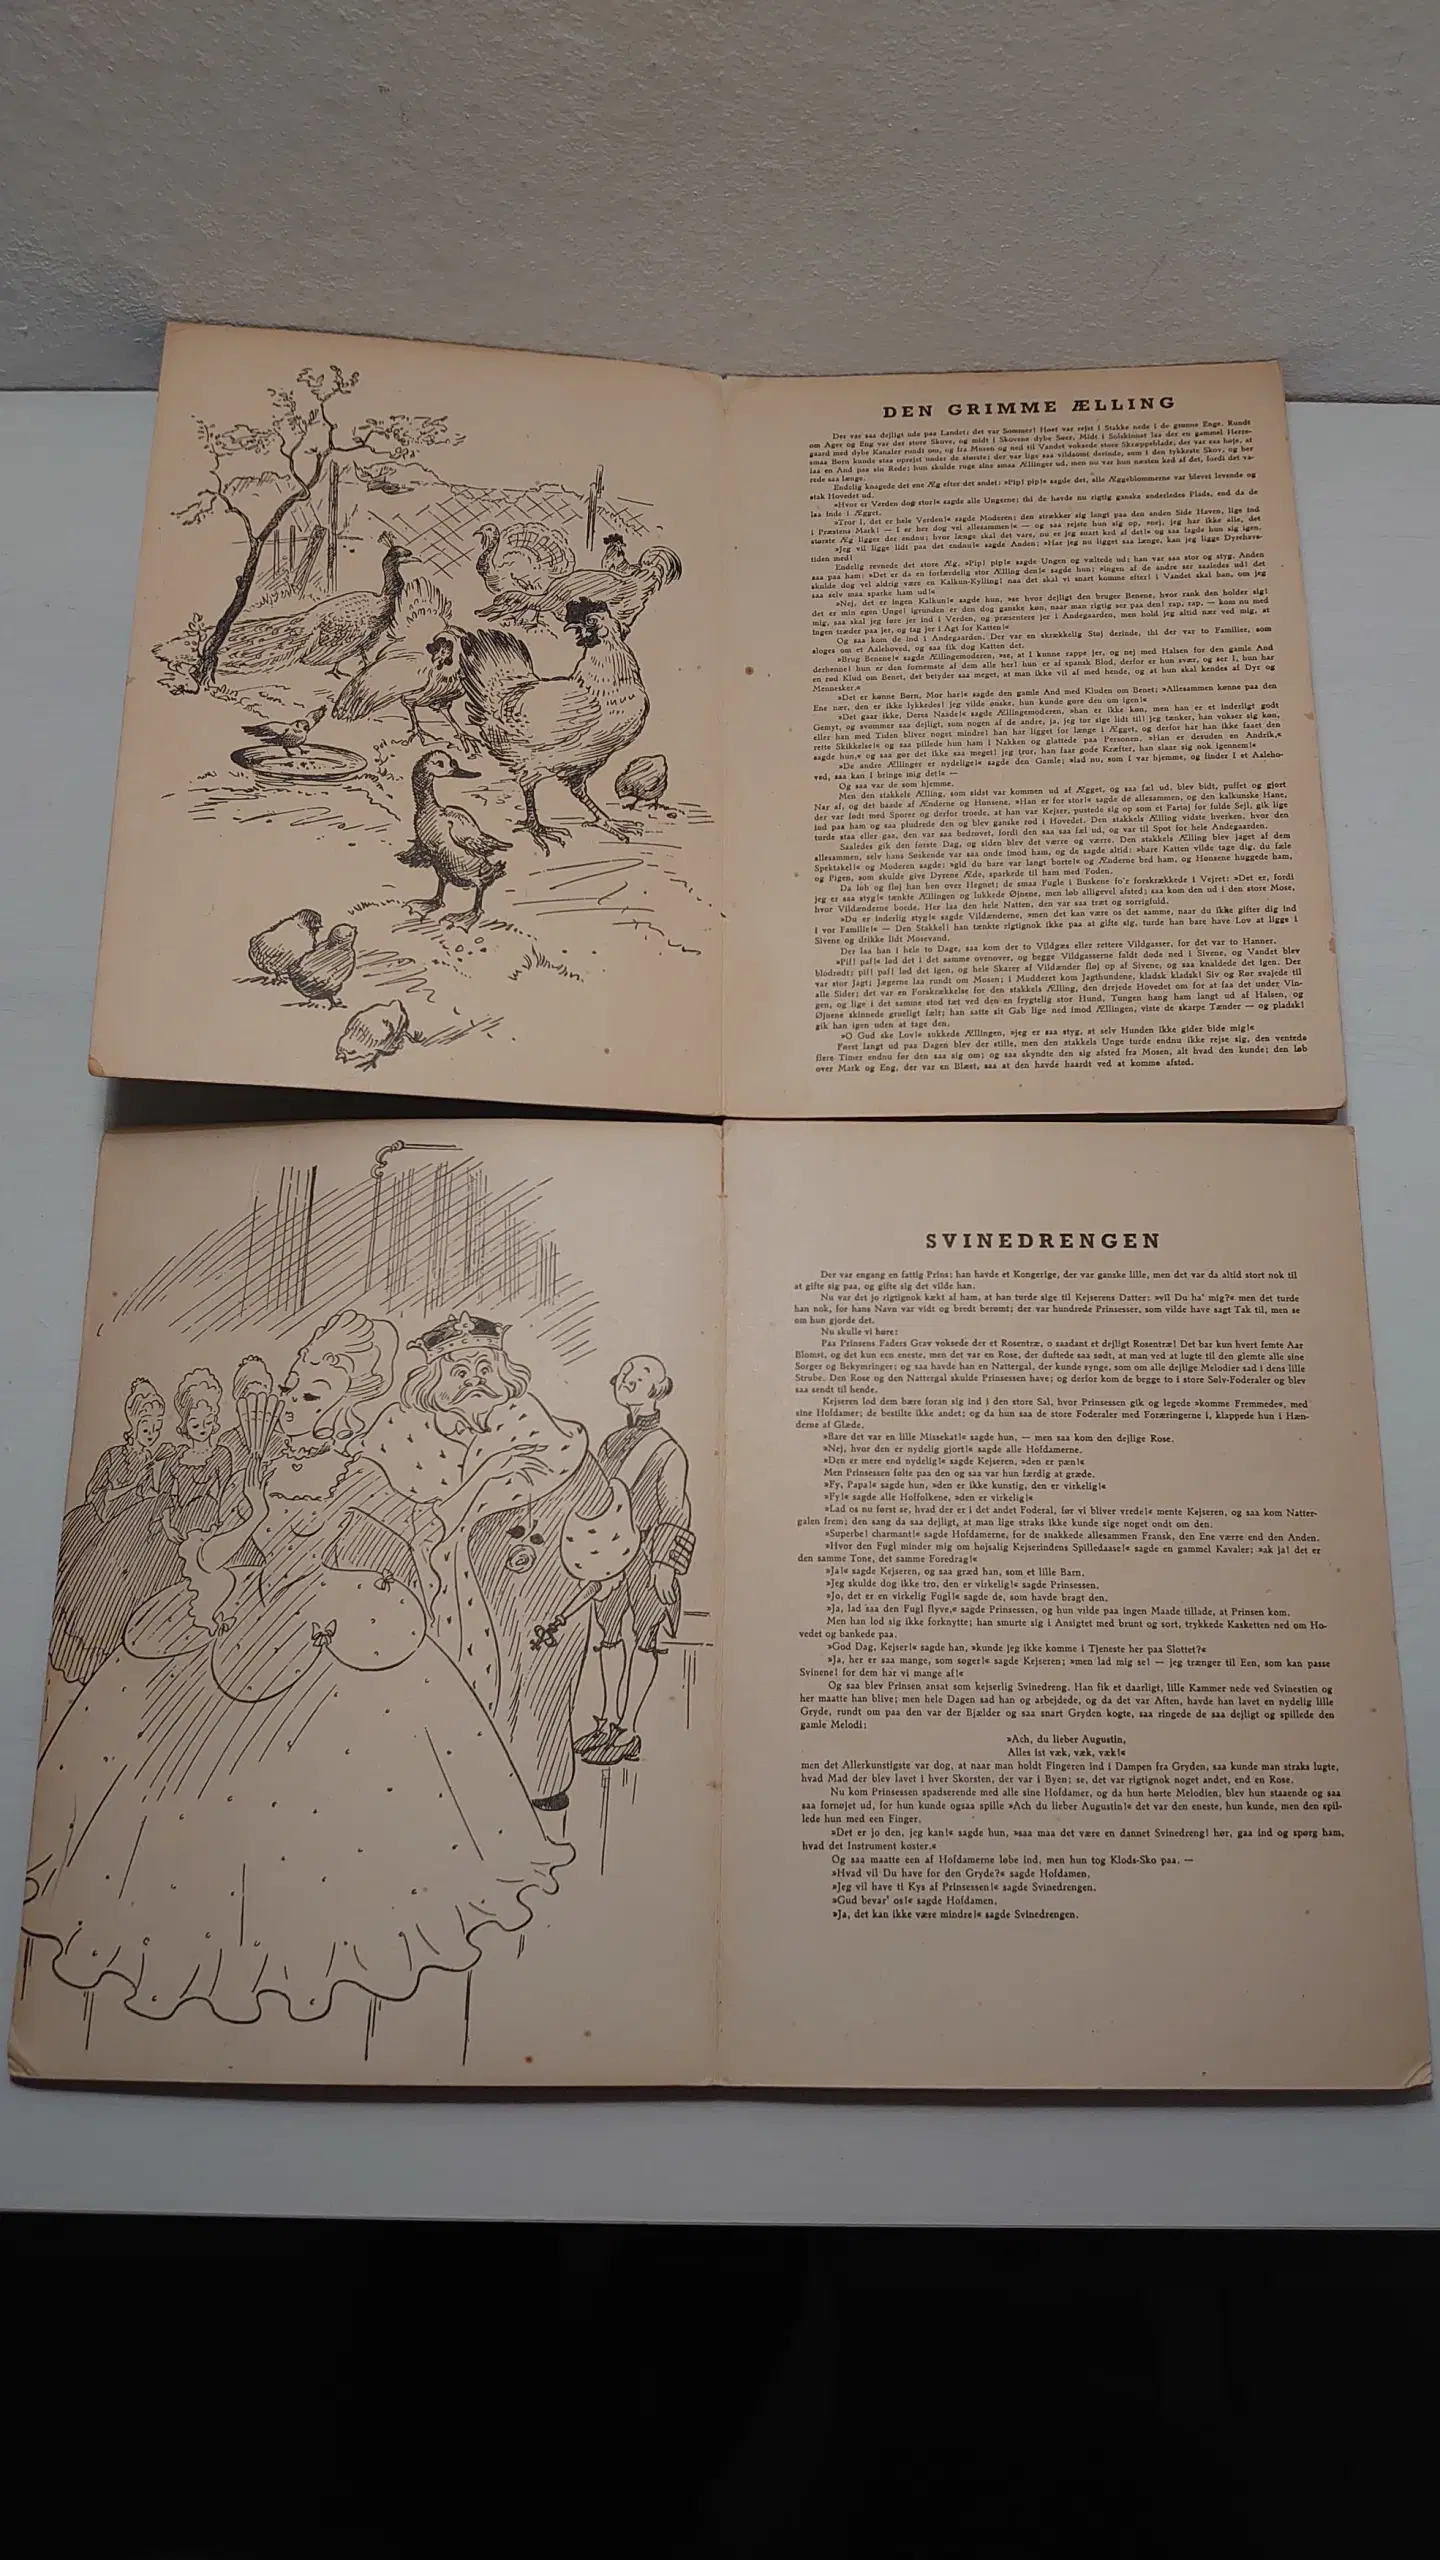 2stk sjældne pop up bøger udg Edelmann før 1948